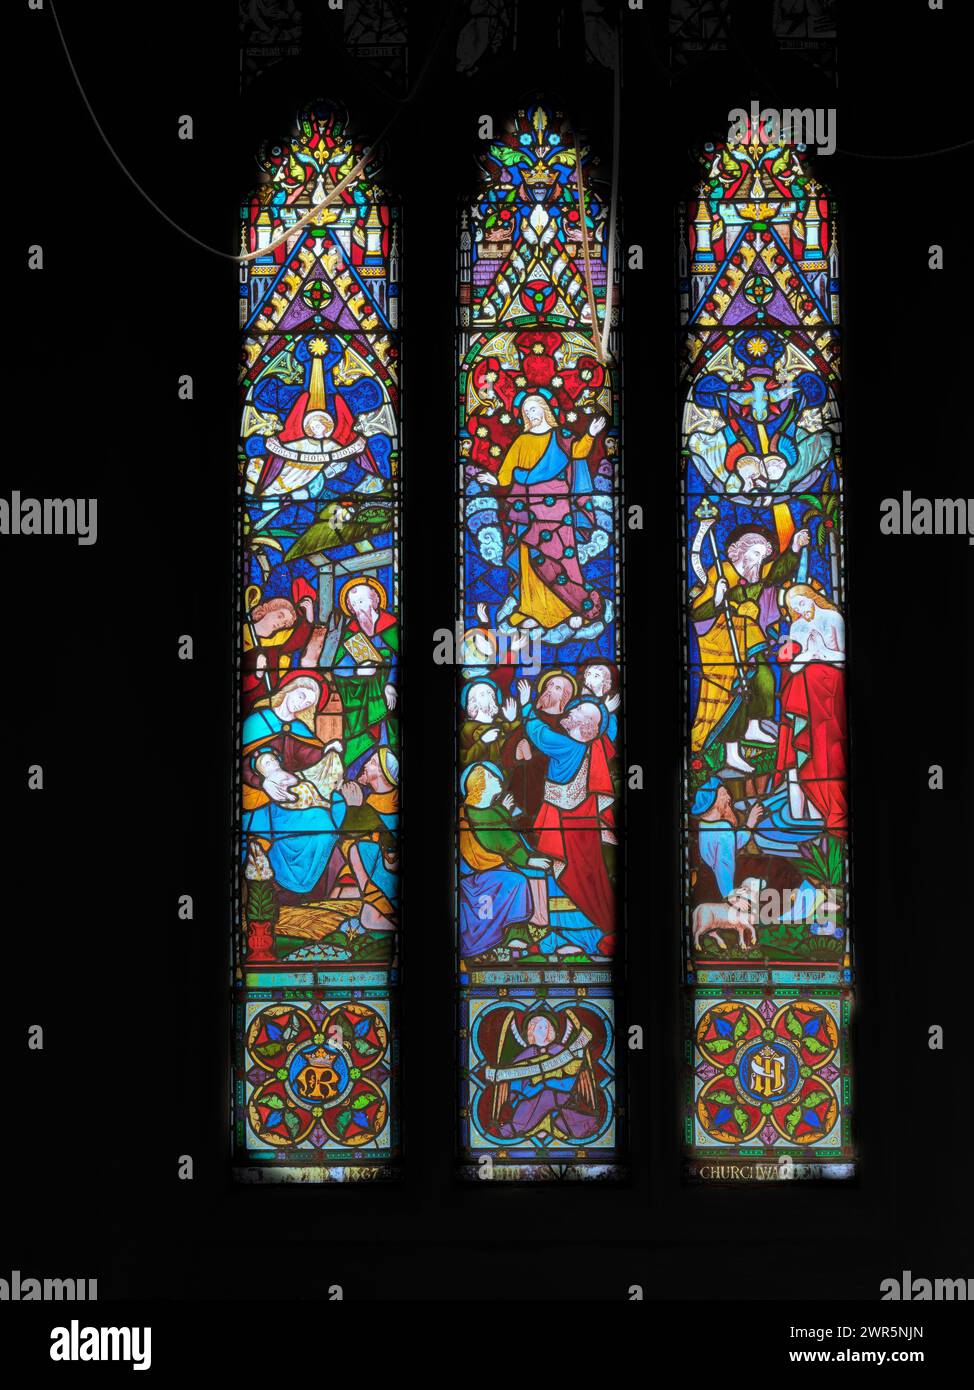 Buntglasfenster mit Ereignissen aus dem Leben Jesu Christi, in der St. Benet's Church aus der sächsischen Zeit, dem ältesten Gebäude in Cambridge, England. Stockfoto